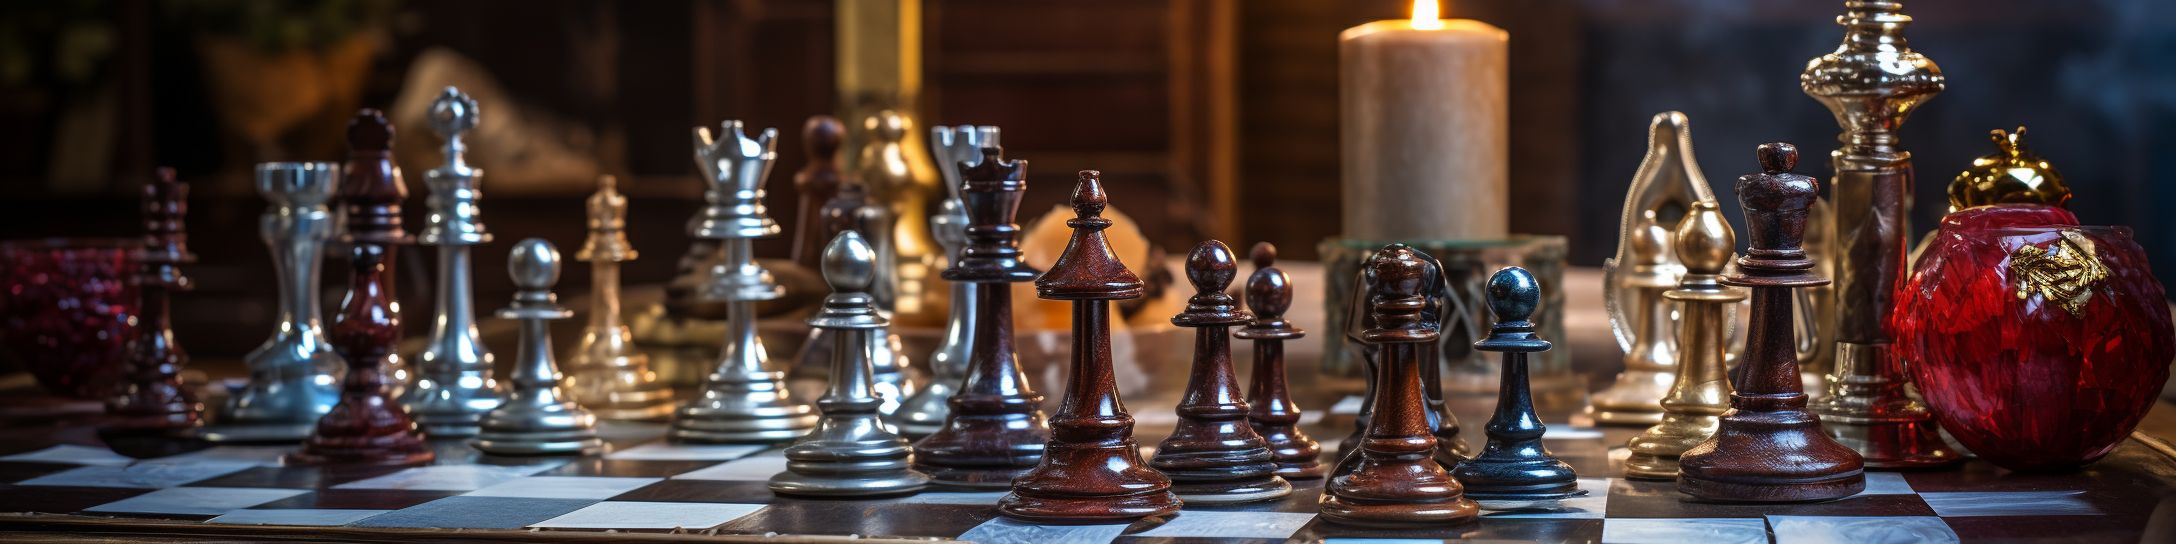 Autres matériaux populaires pour les jeux d'échecs